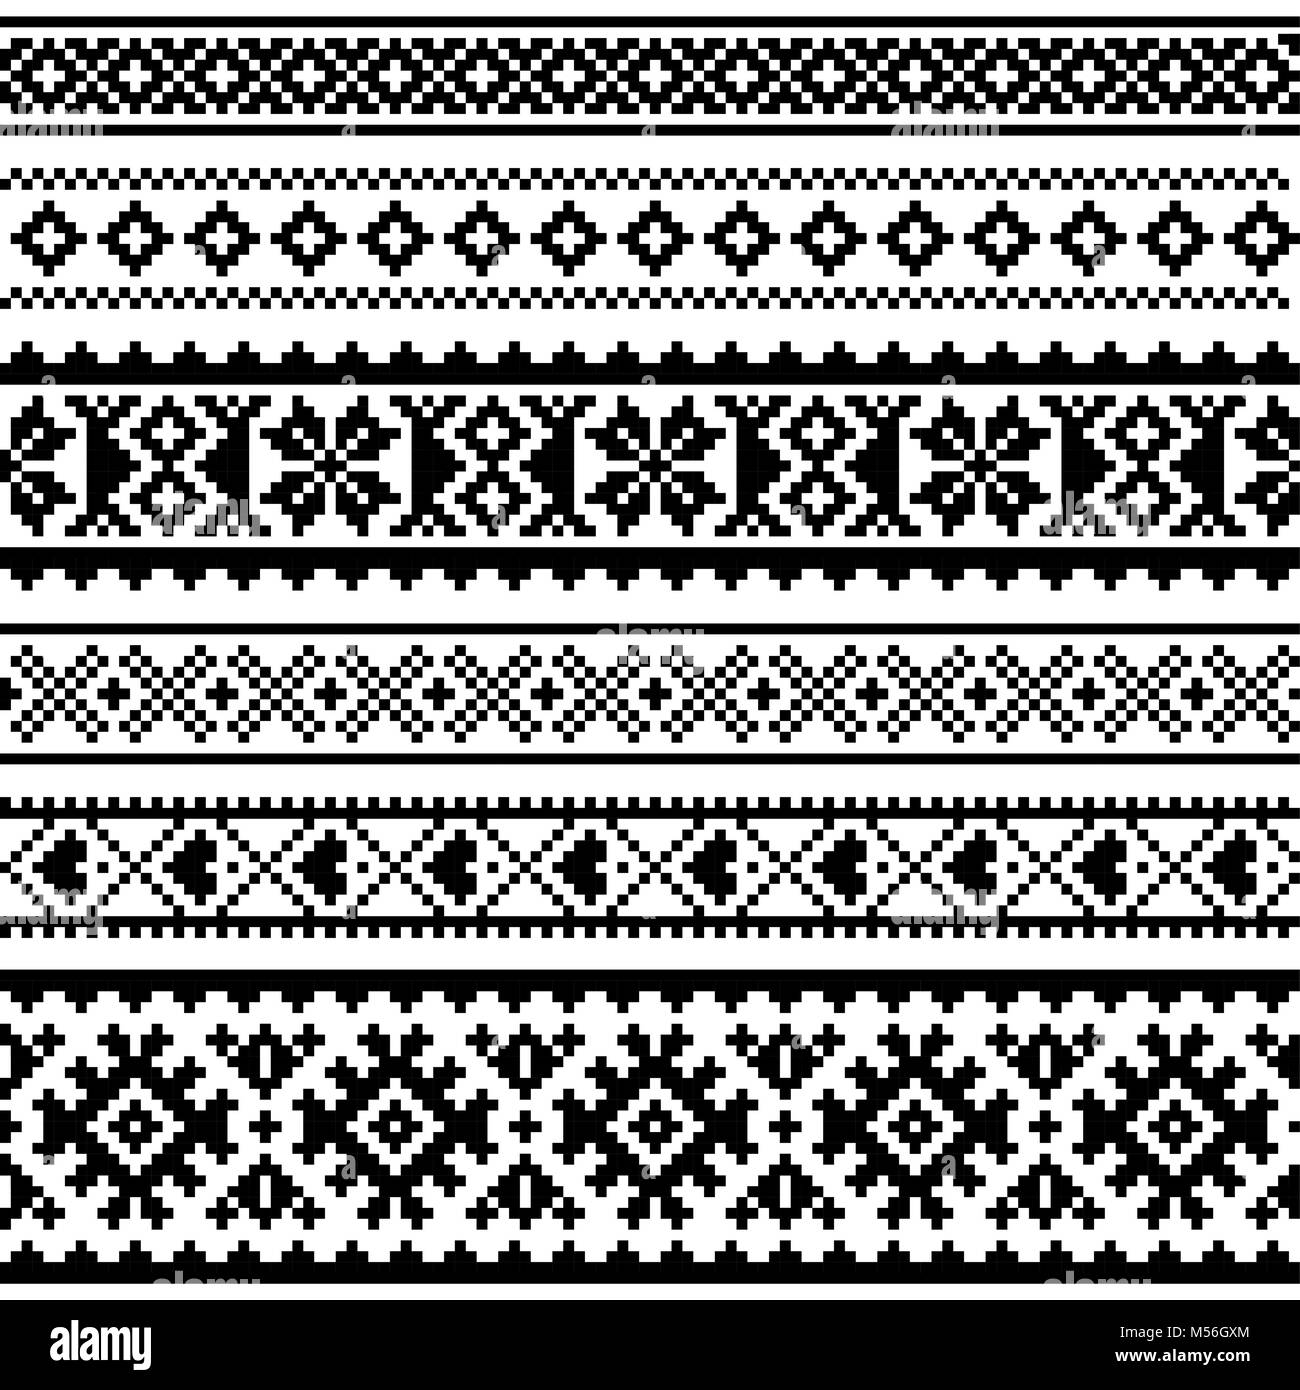 Vettore di Sami seamless pattern, la Lapponia folk art, tradizionale maglia e ricamo design monocromatico Illustrazione Vettoriale